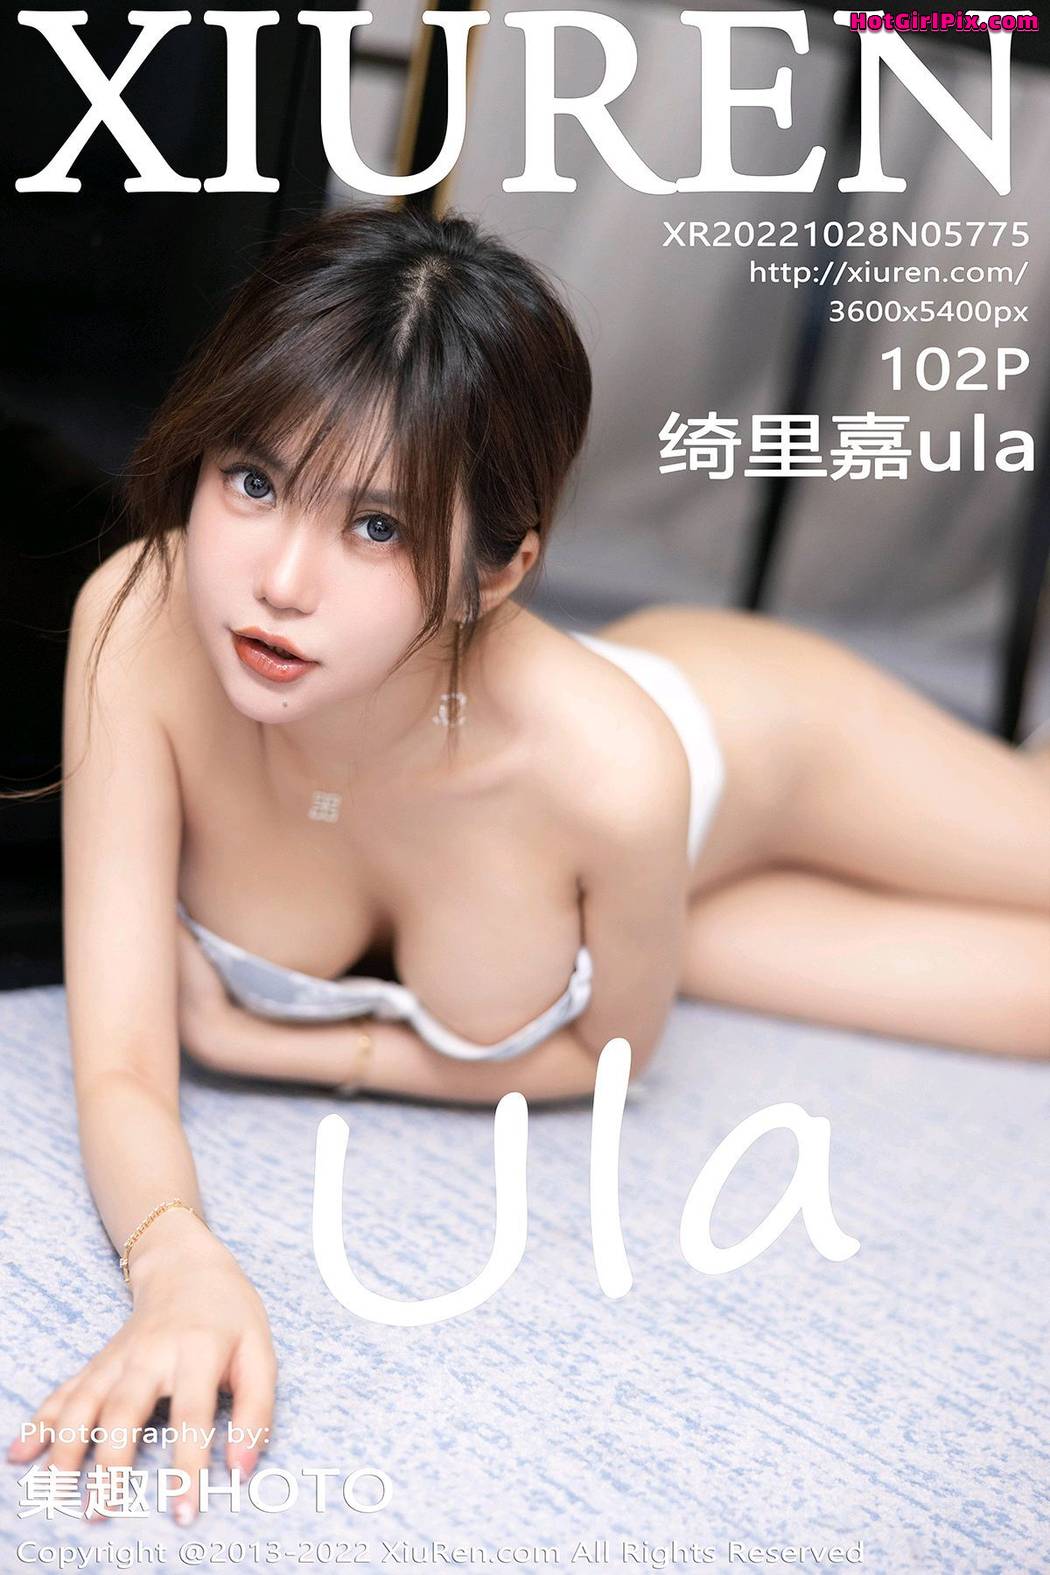 [XIUREN] No.5775 Qi Li Jia 绮里嘉ula Cover Photo